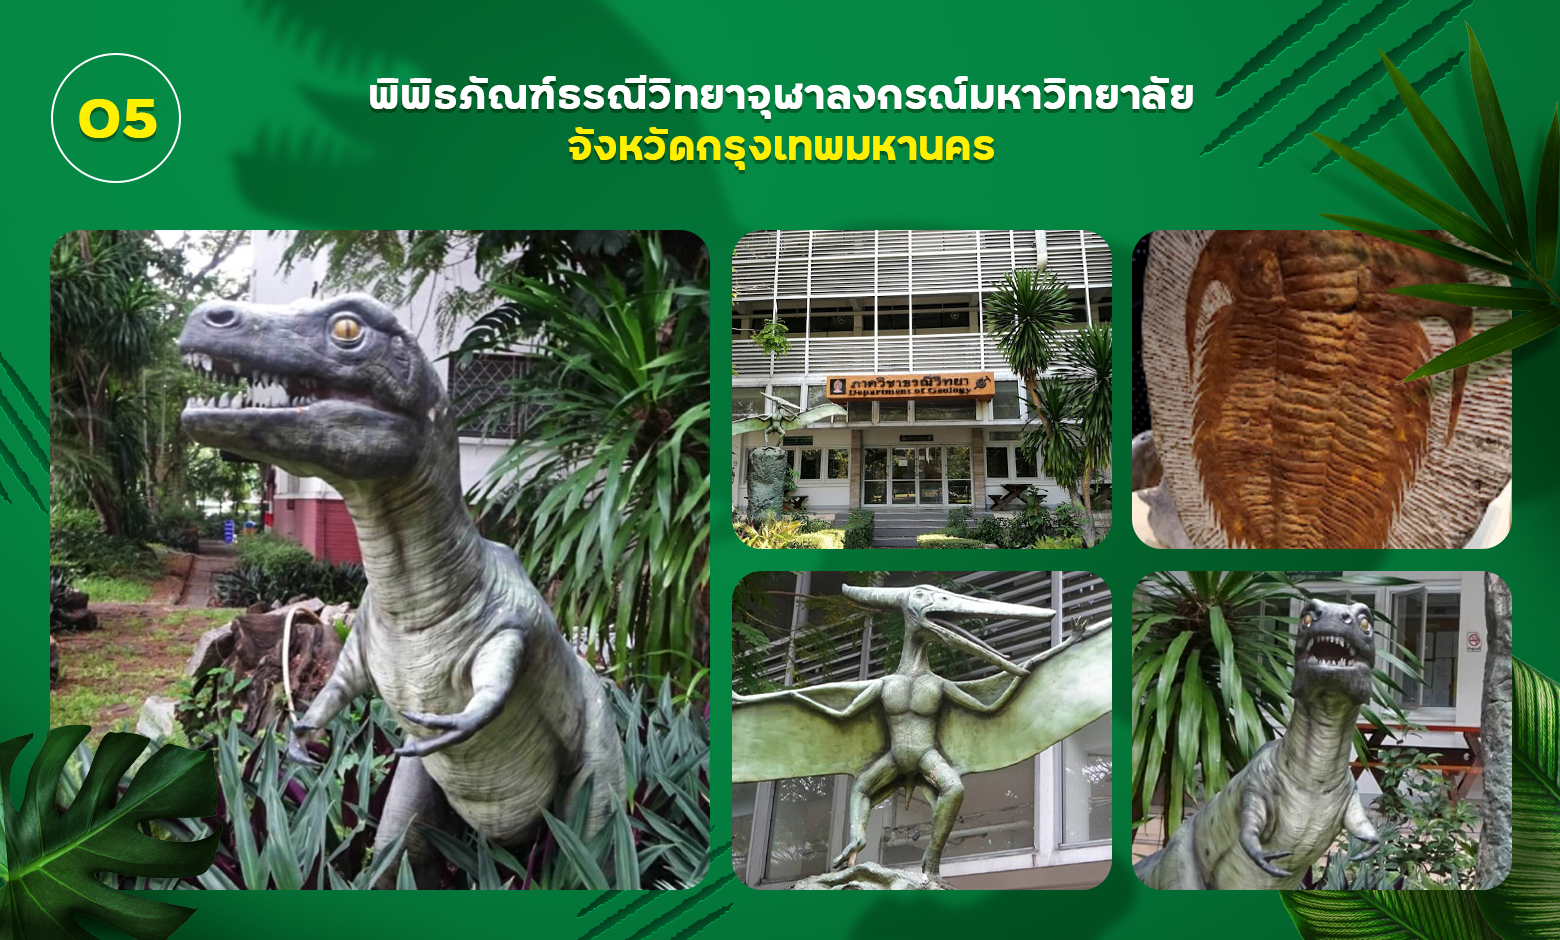 พิพิธภัณฑ์ไดโนเสาร์ธรณีวิทยา จุฬาลงกรณ์มหาวิทยาลัย กรุงเทพมหานคร